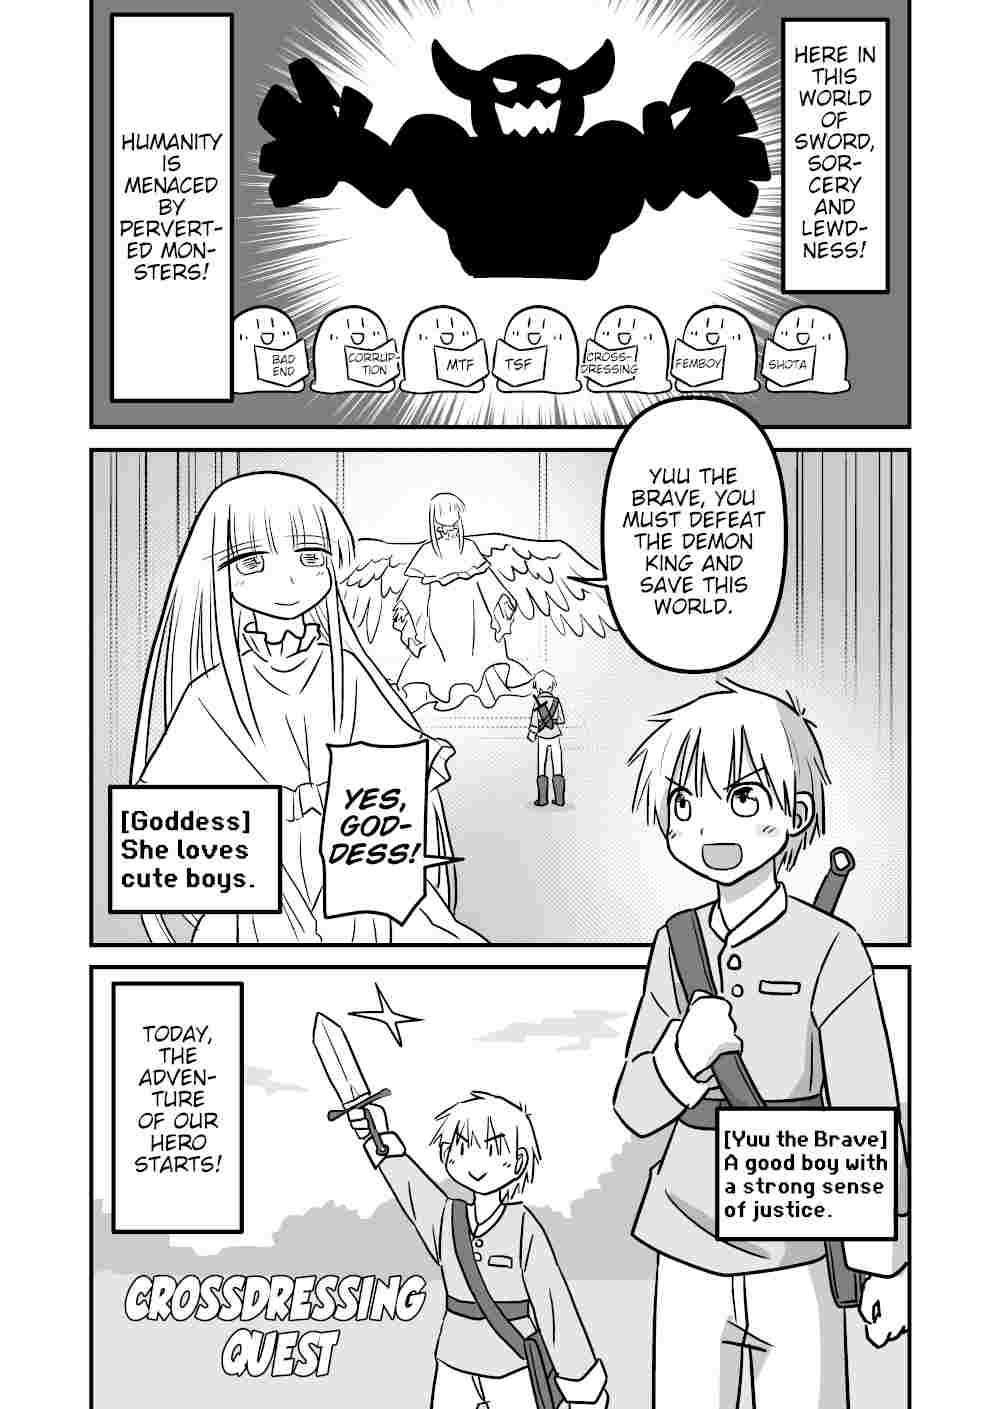 Crossdressing Quest manga